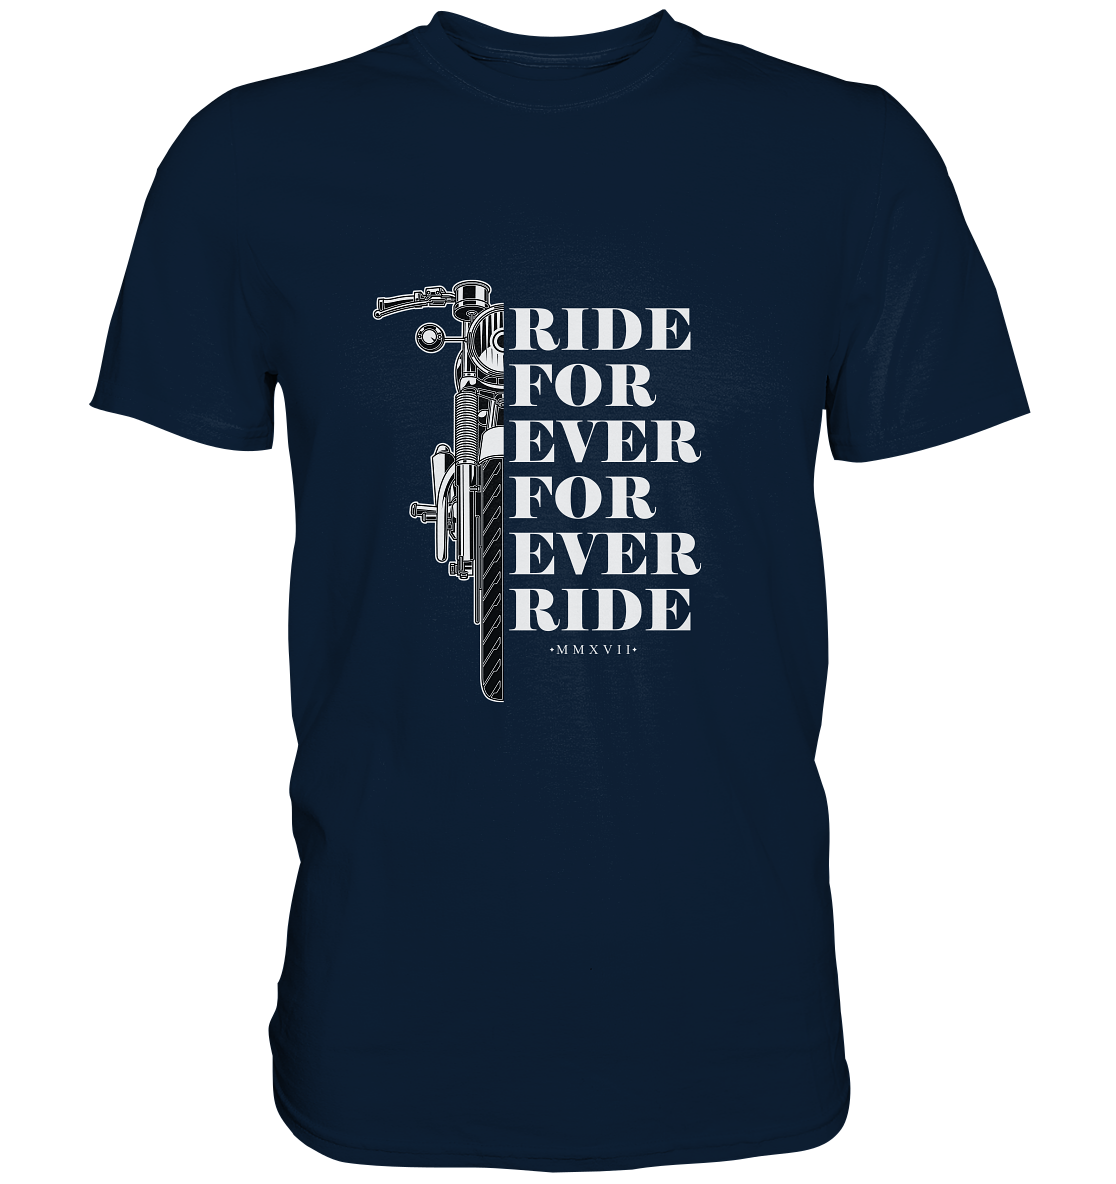 Motorrad mit Spruch Ride for ever... - Premium Unisex Shirt - mehrere Farben